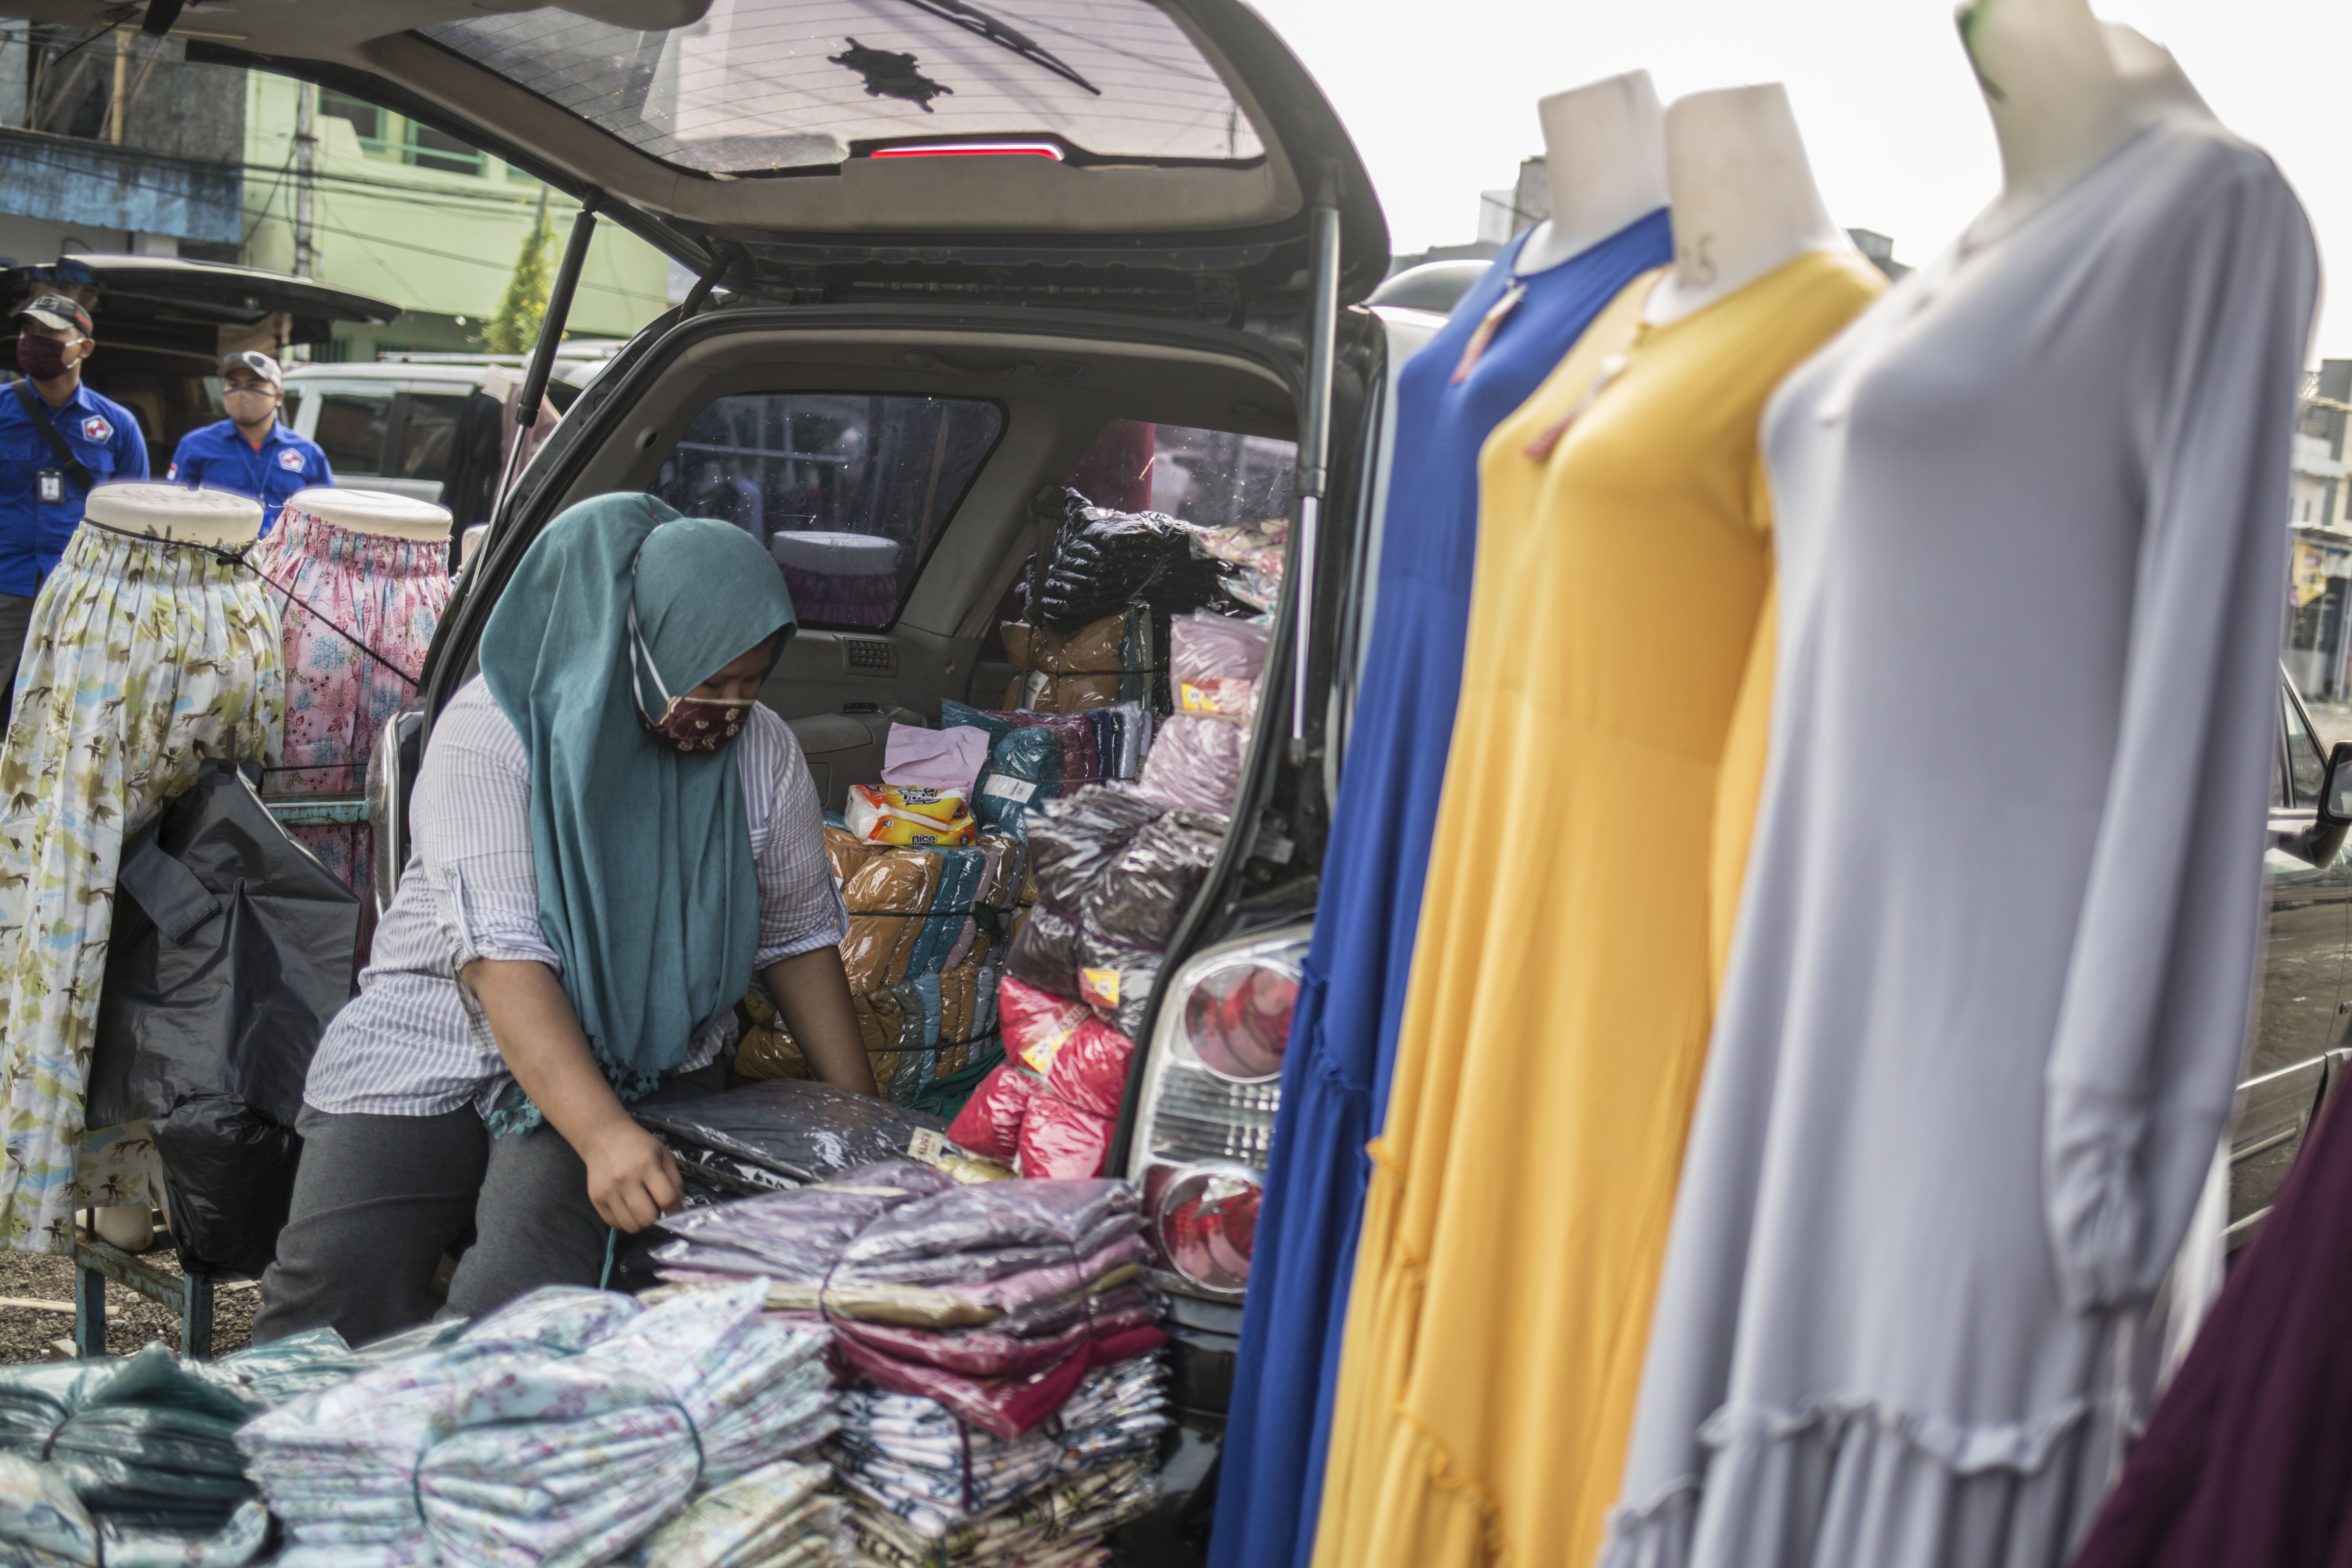 Pedagang pakaian membereskan dagangannya di Pasar Tasik, Cideng, Jakarta, Kamis (11/6/2020). Sempat ditutup sejak April lalu, kini Pasar Tasik kembali buka pada masa transisi Pembasatan Sosial Bersekala Besar (PSBB) dengan menerapkan protokol kesehatan serta pembatasan jumlah pengunjung.